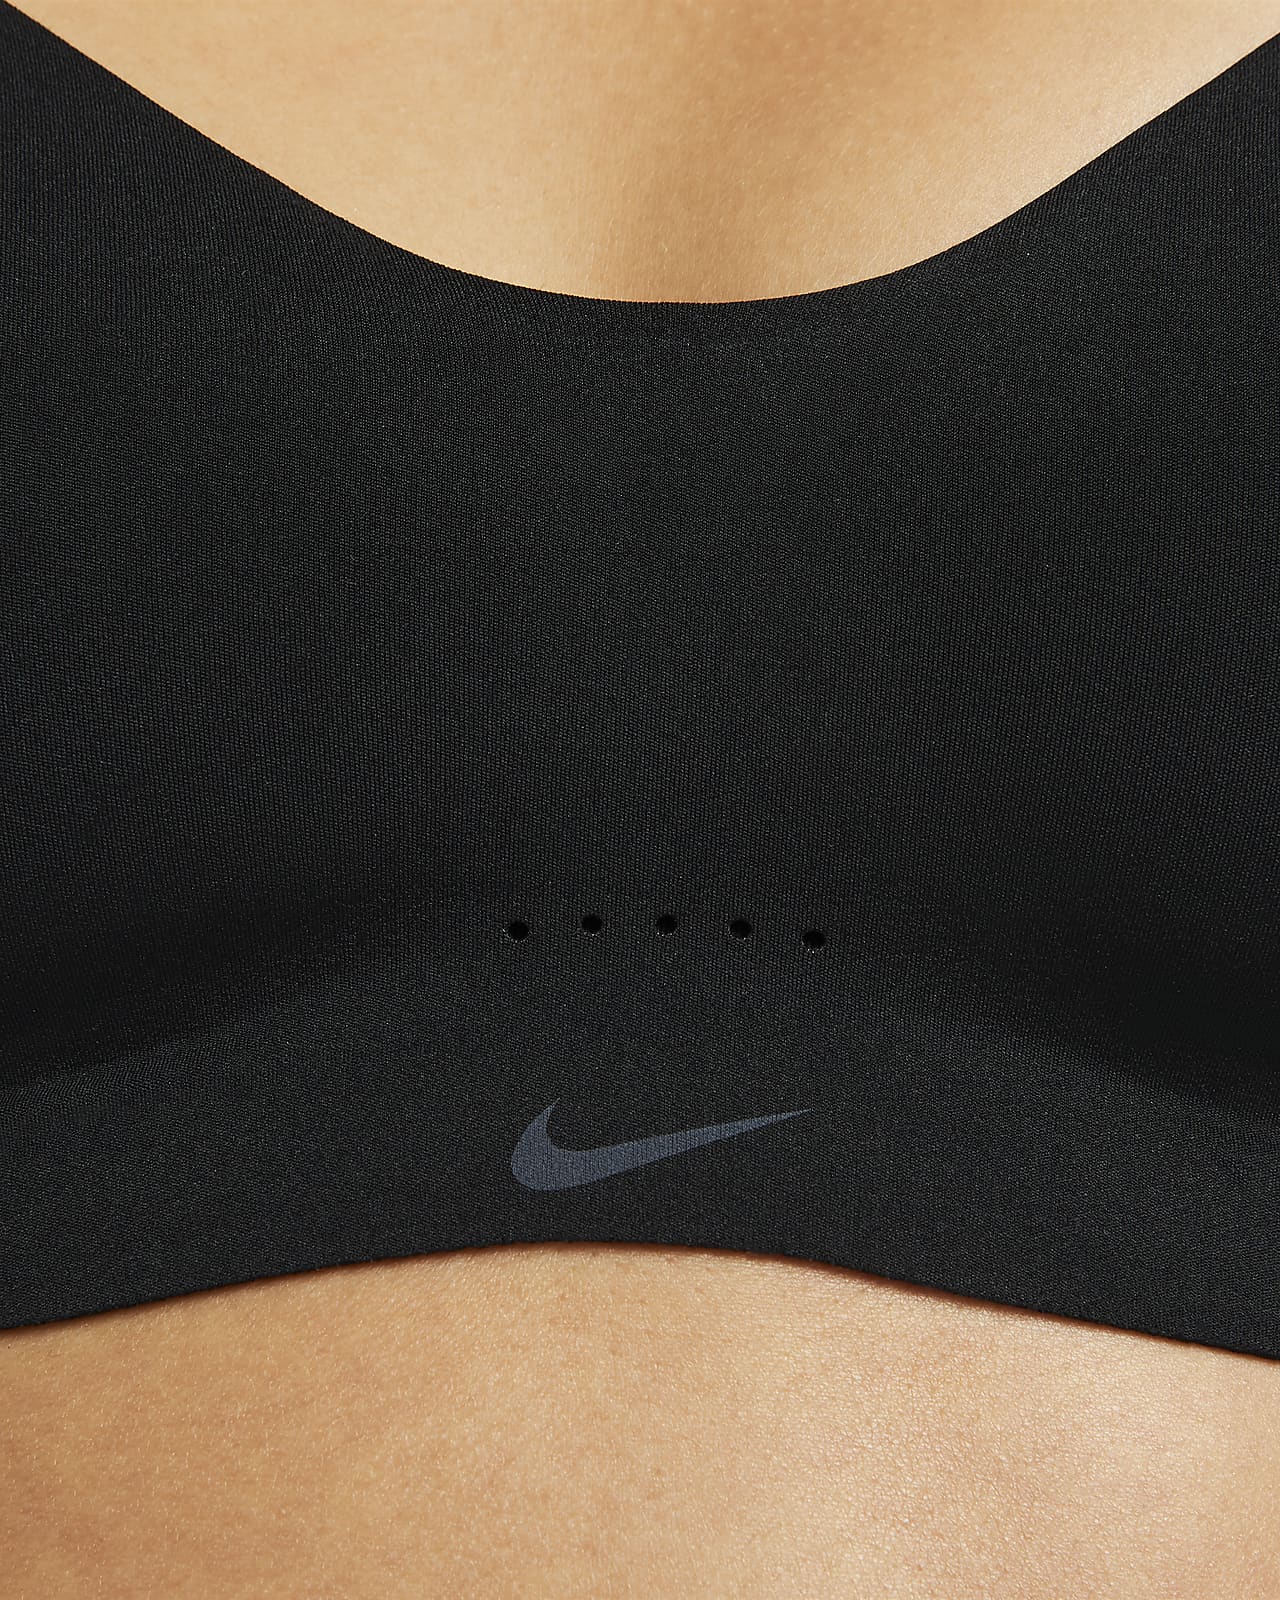 Nike Dri-FIT Alate Women's Minimalist Light-Support Padded Sports Bra ...